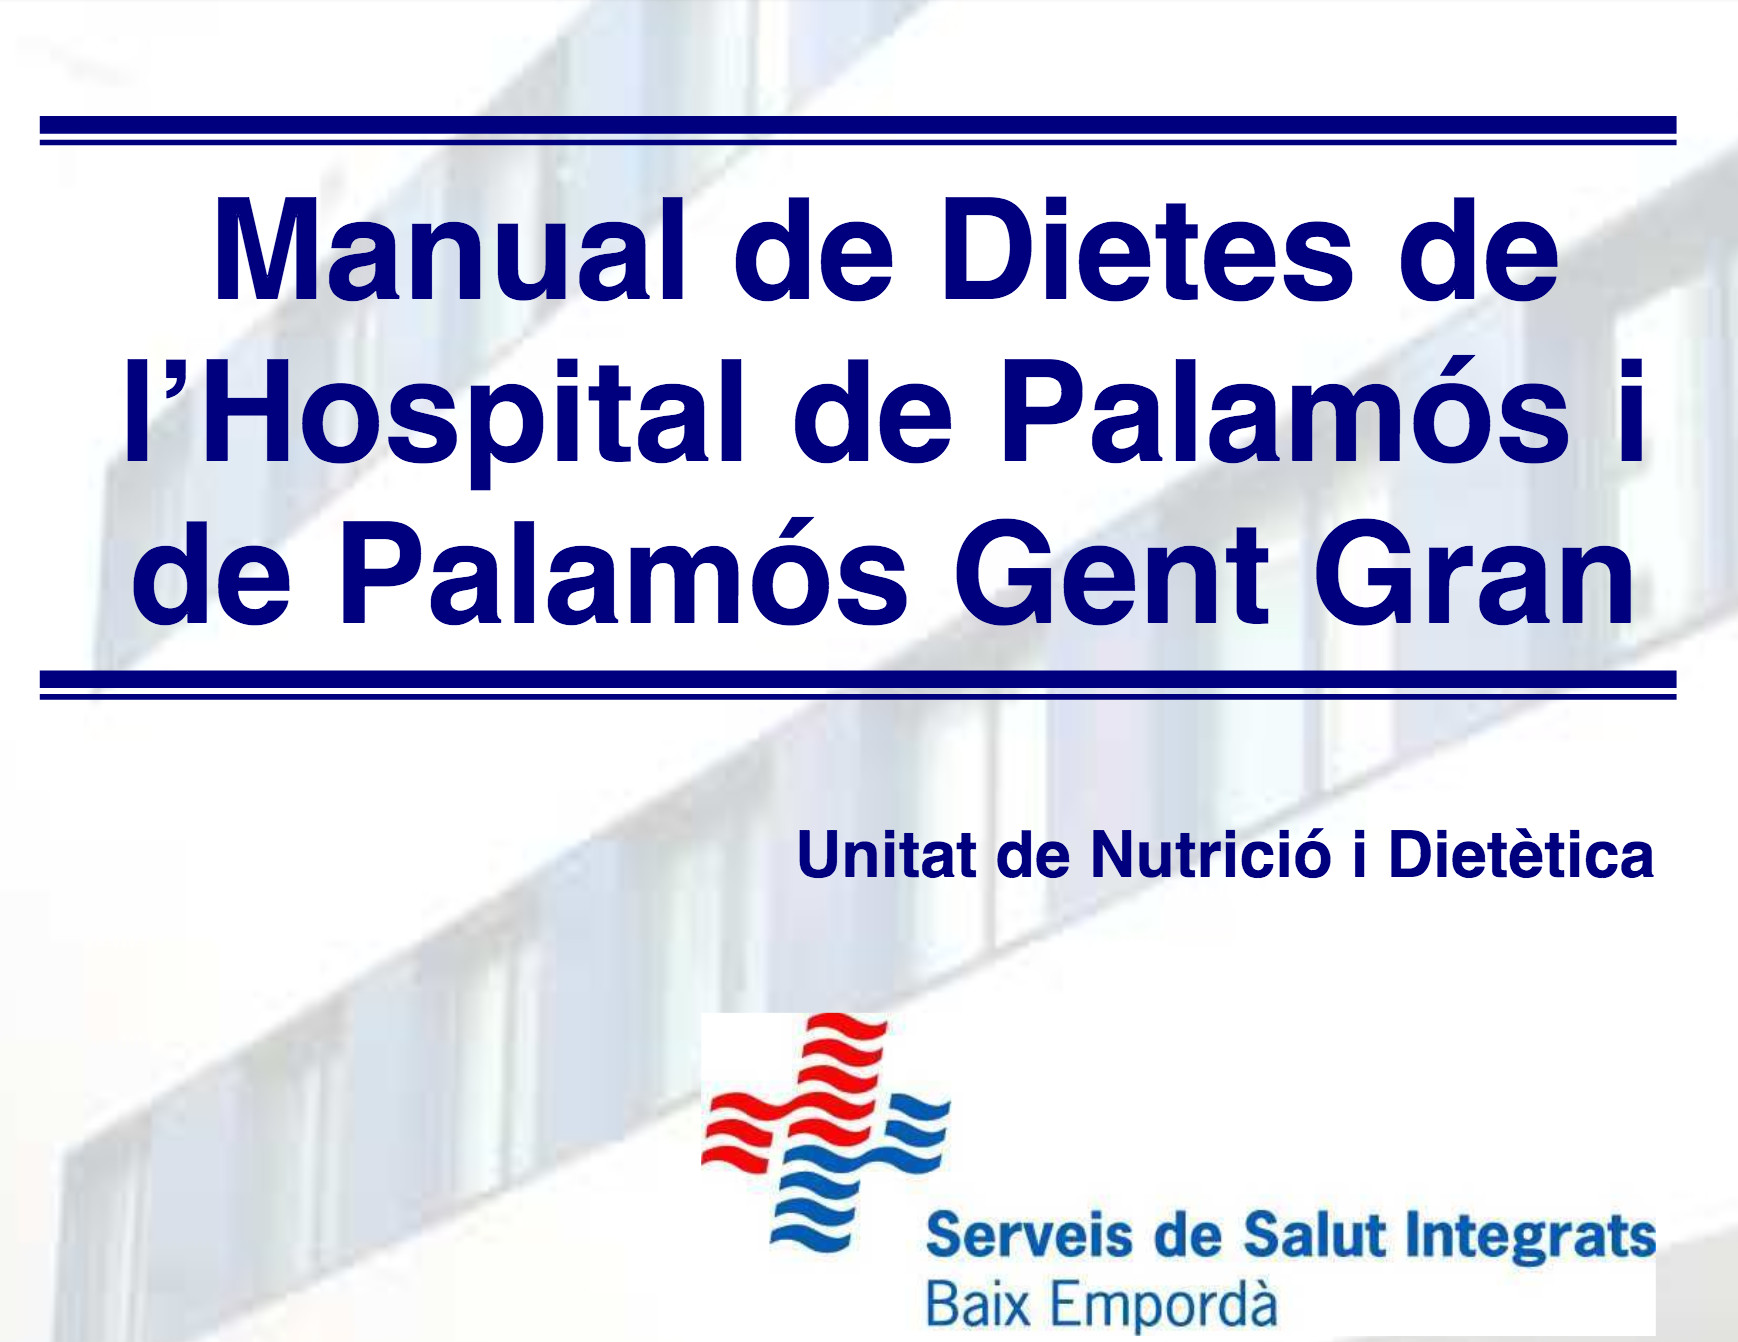 Manual de Dietas del Hospital i PGG